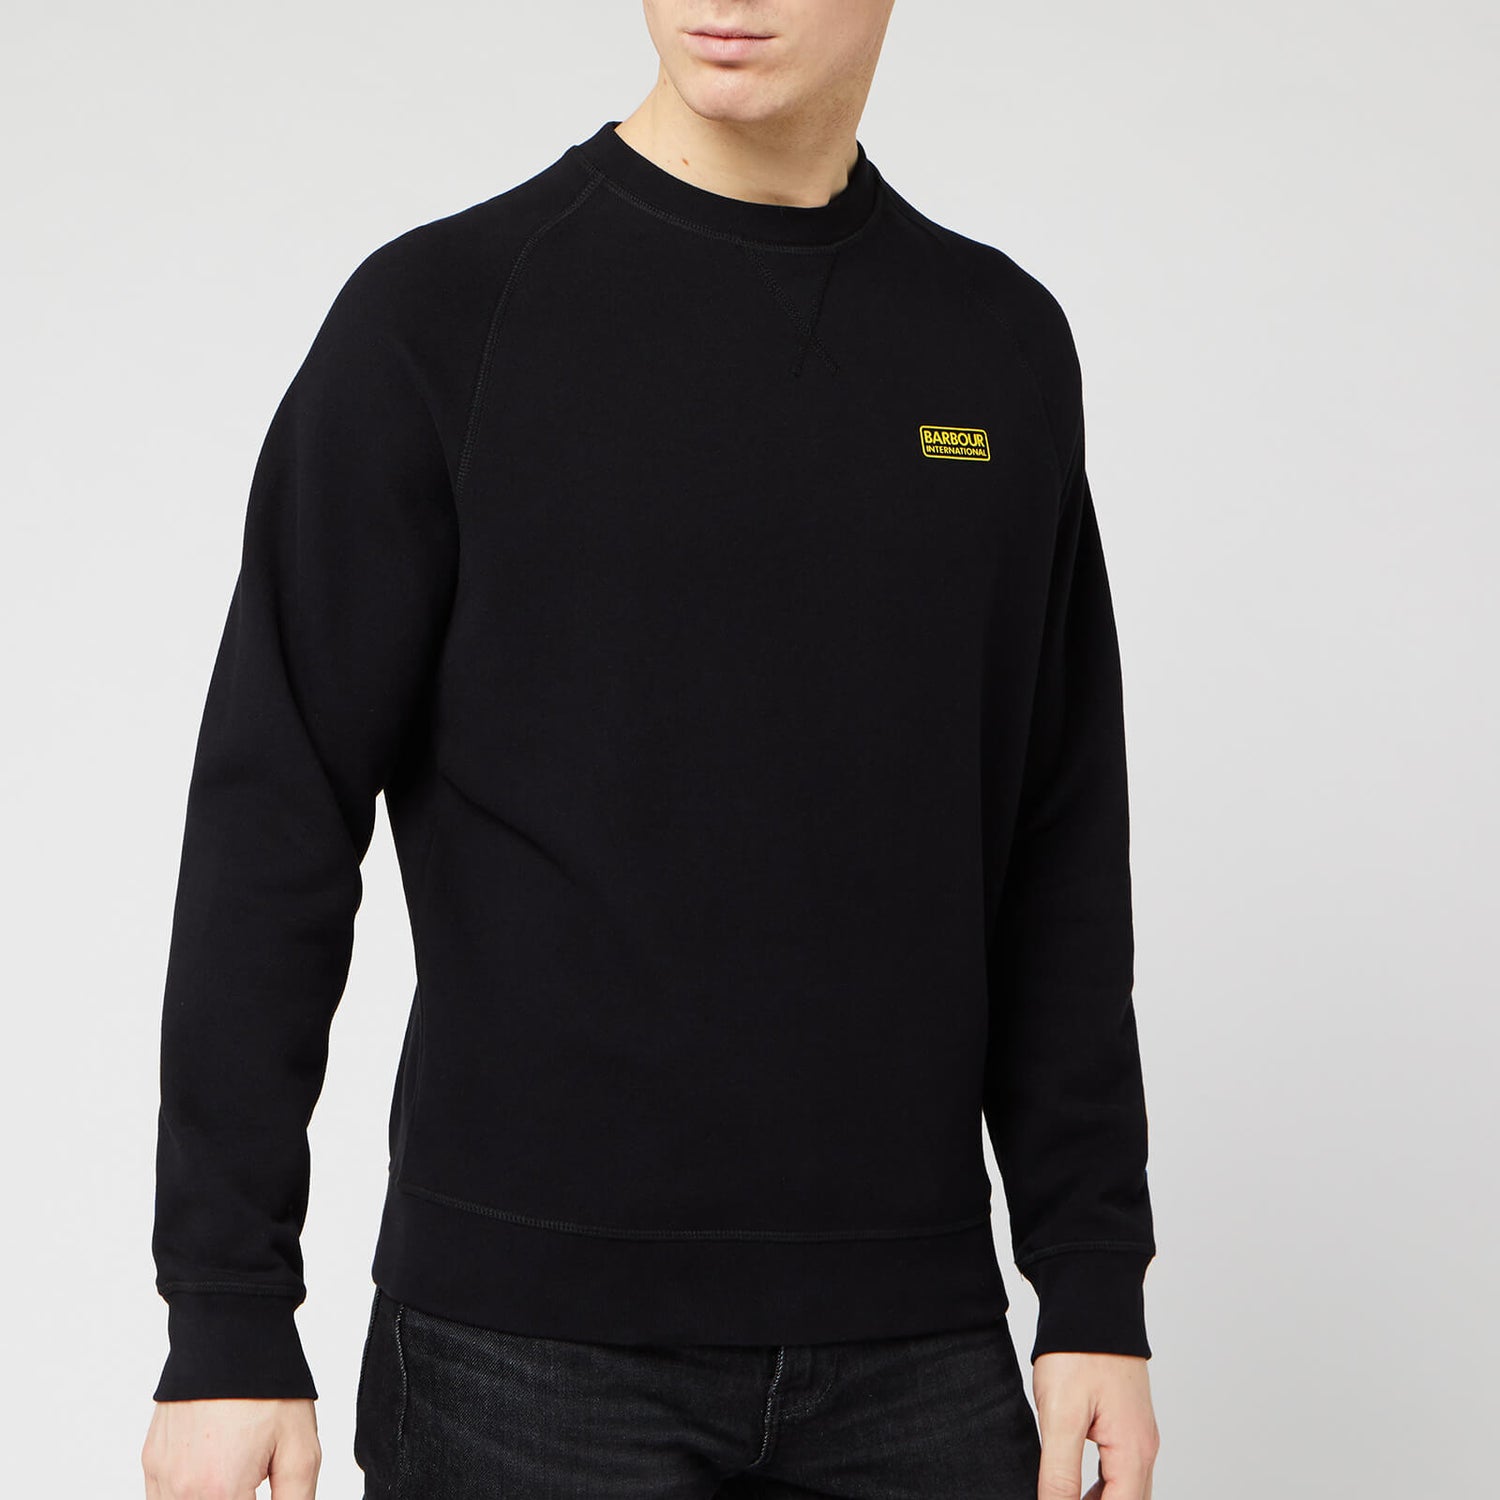 Barbour International Men's Essential Crew Sweatshirt - Black